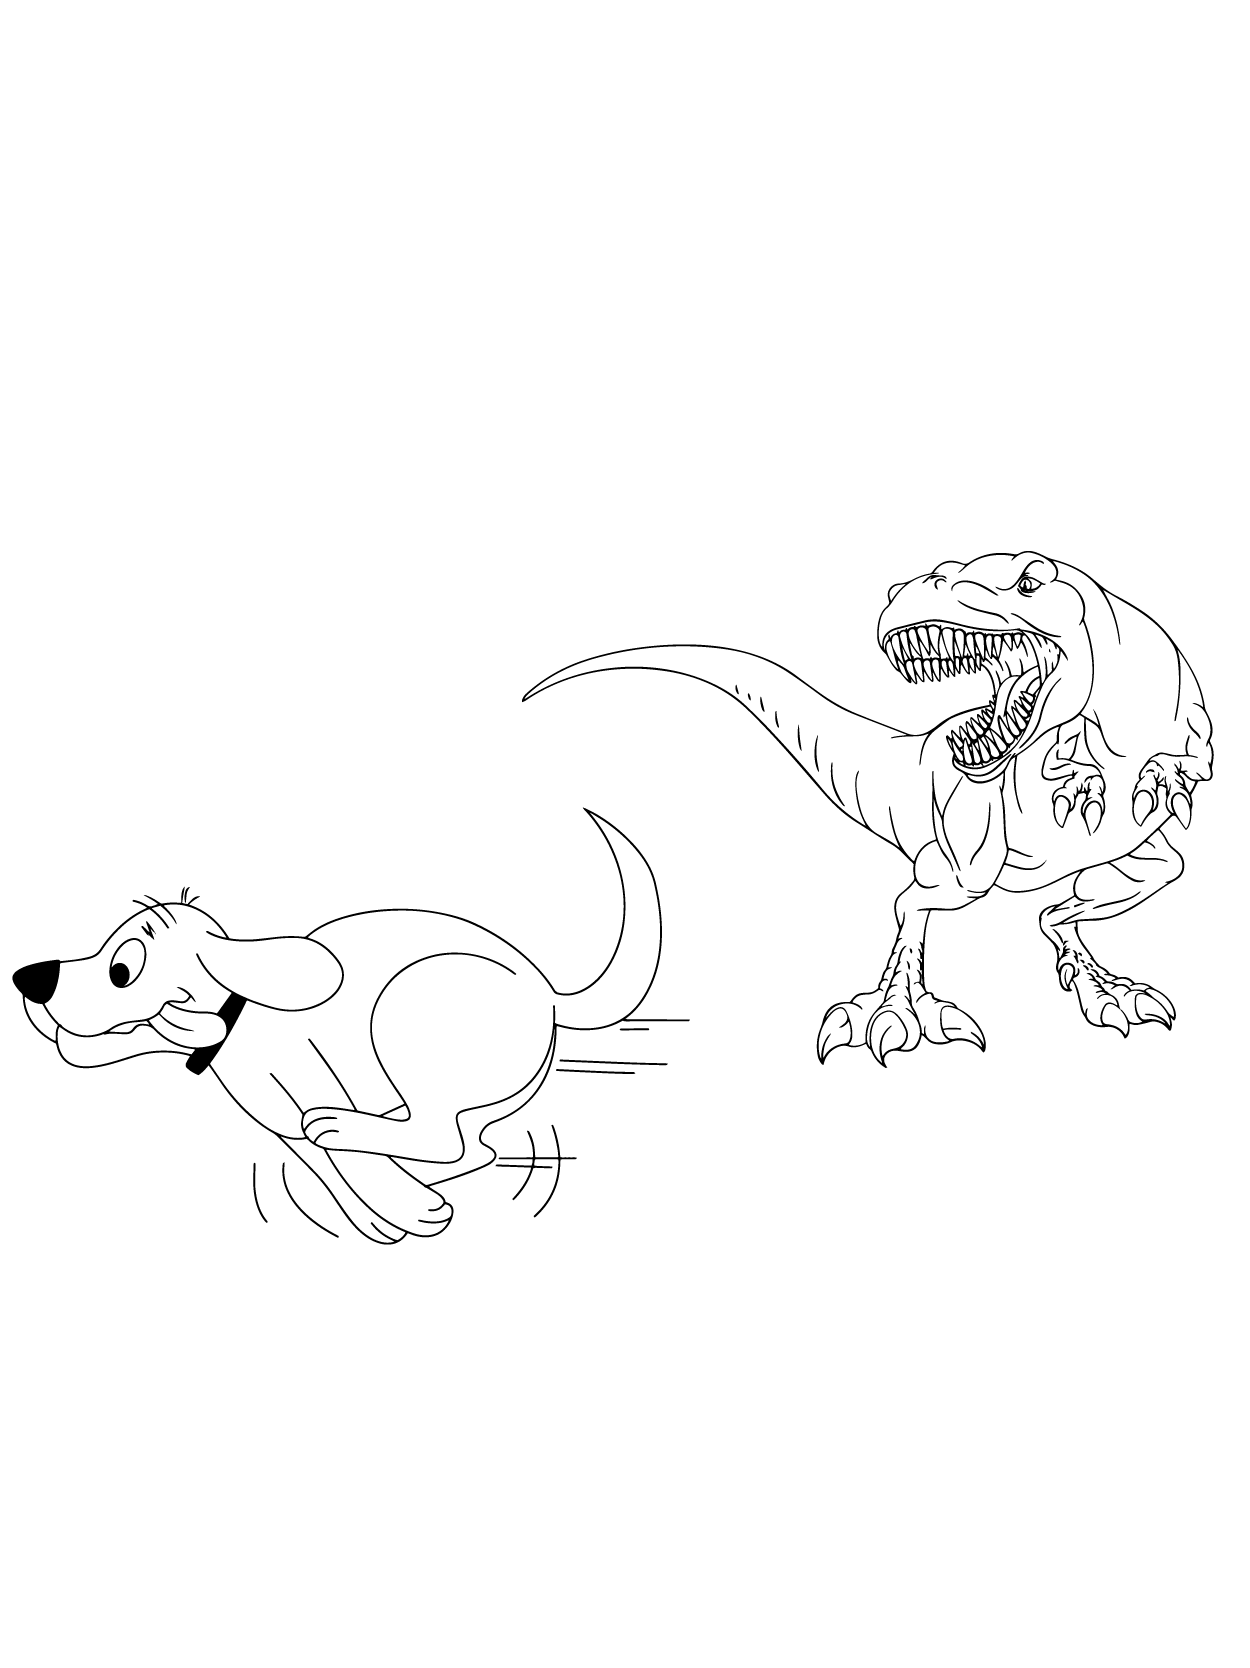 Clifford Afraid of Dinosaur